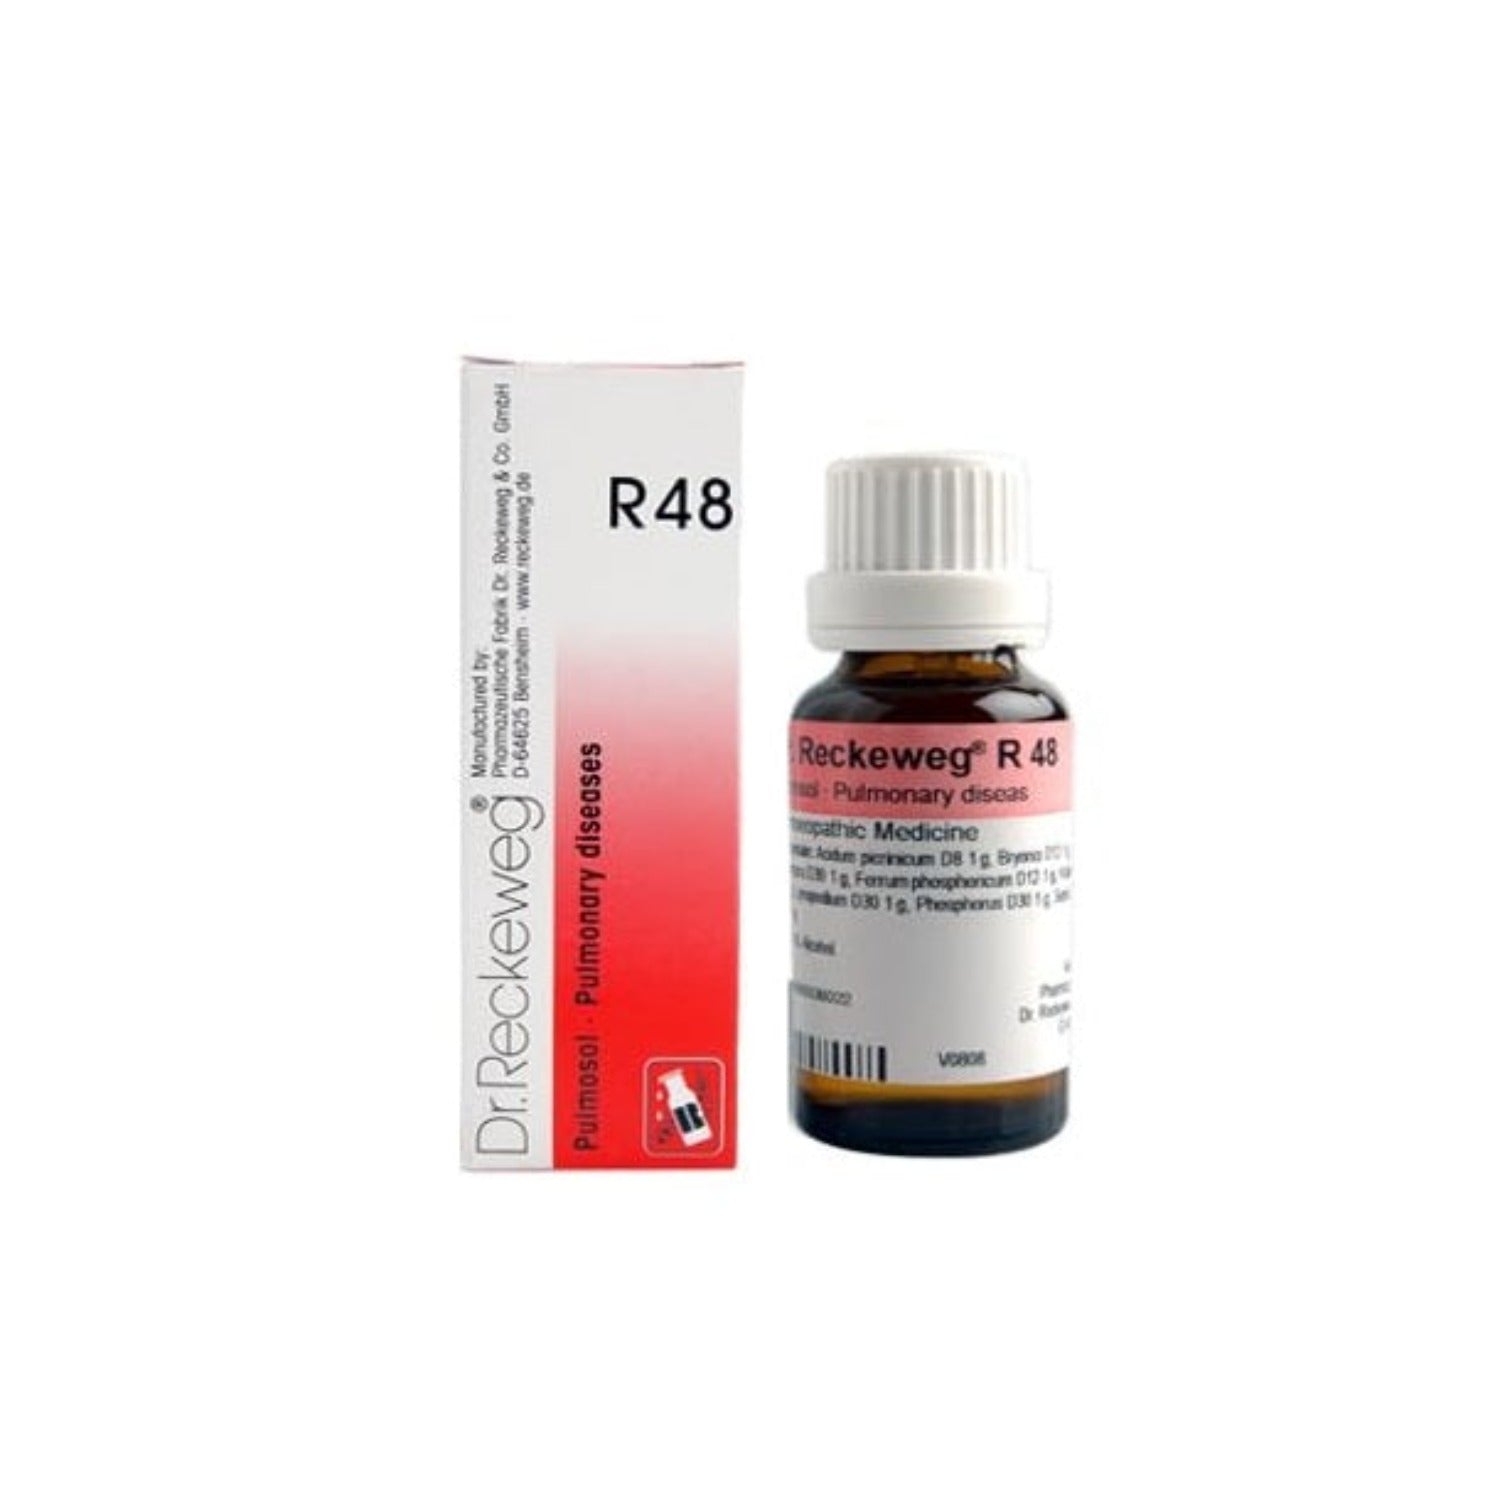 Dr Reckeweg Homoeopathy R48 Pulmonary Diseases Drops 22 ml